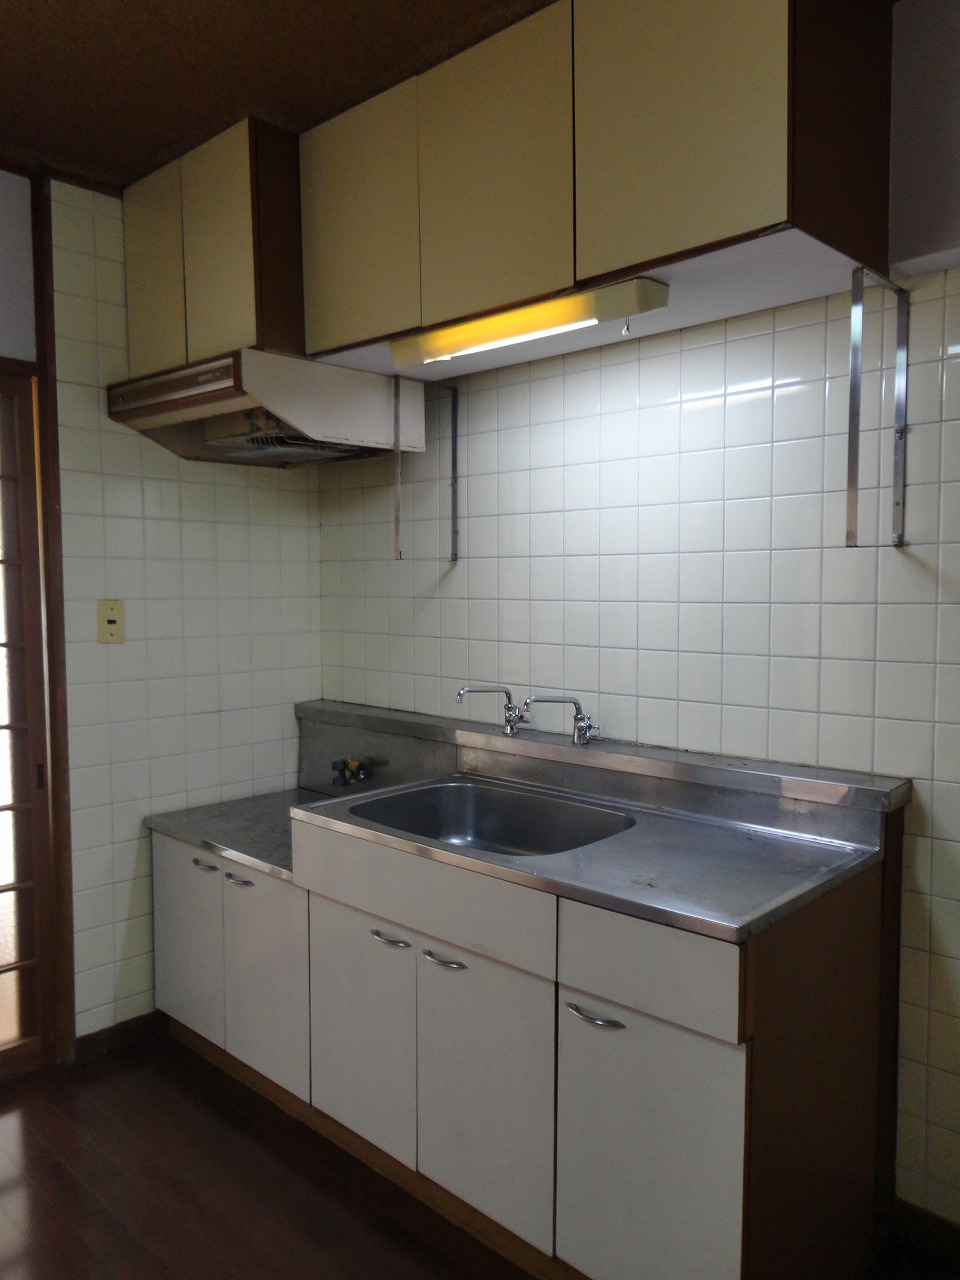 Kitchen. Work easy large kitchen ☆ 